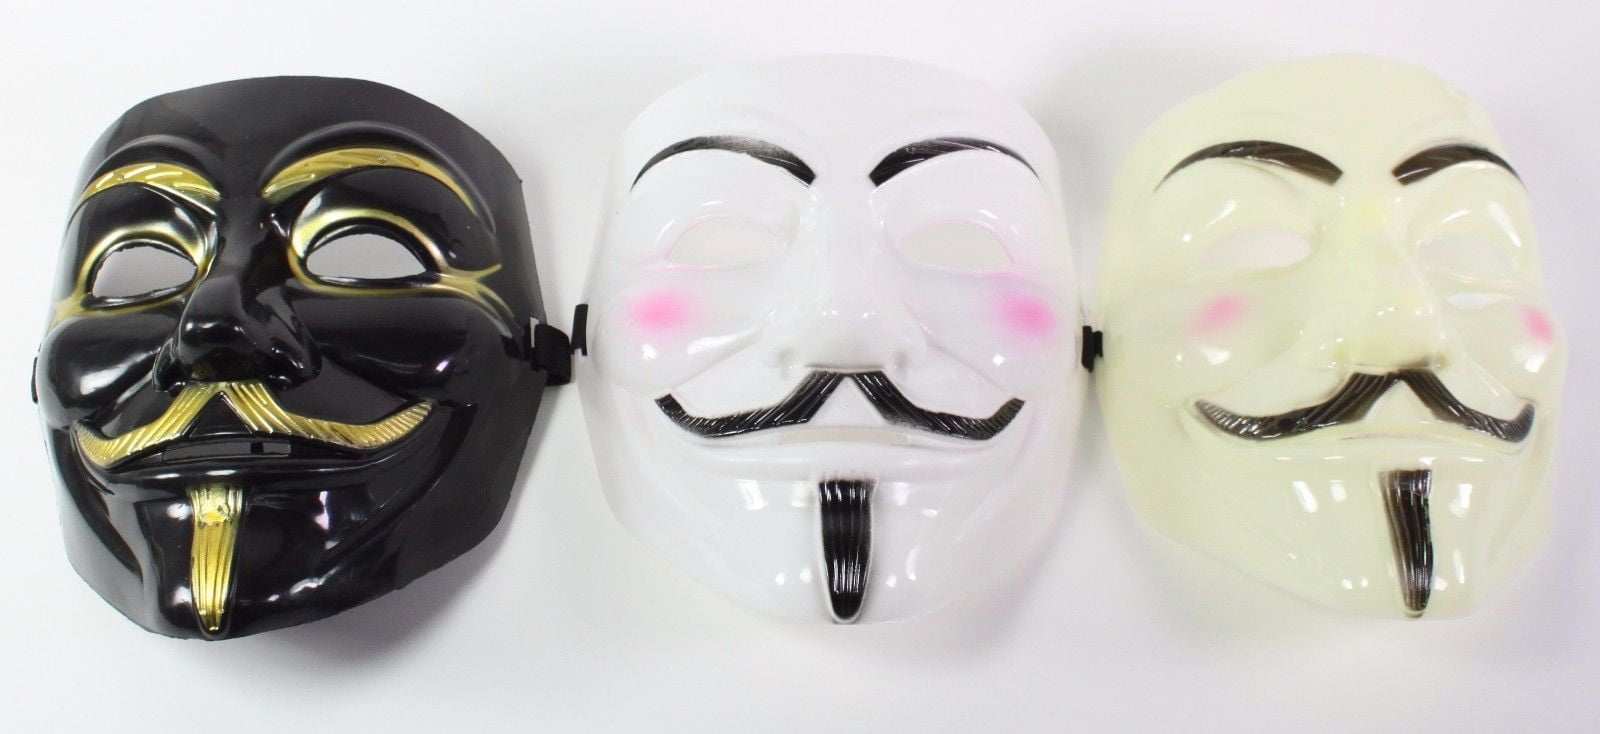 2018 Guy Fawkes LED Light Up Anonymous V for Vendetta Halloween Fancy Dress Mask 